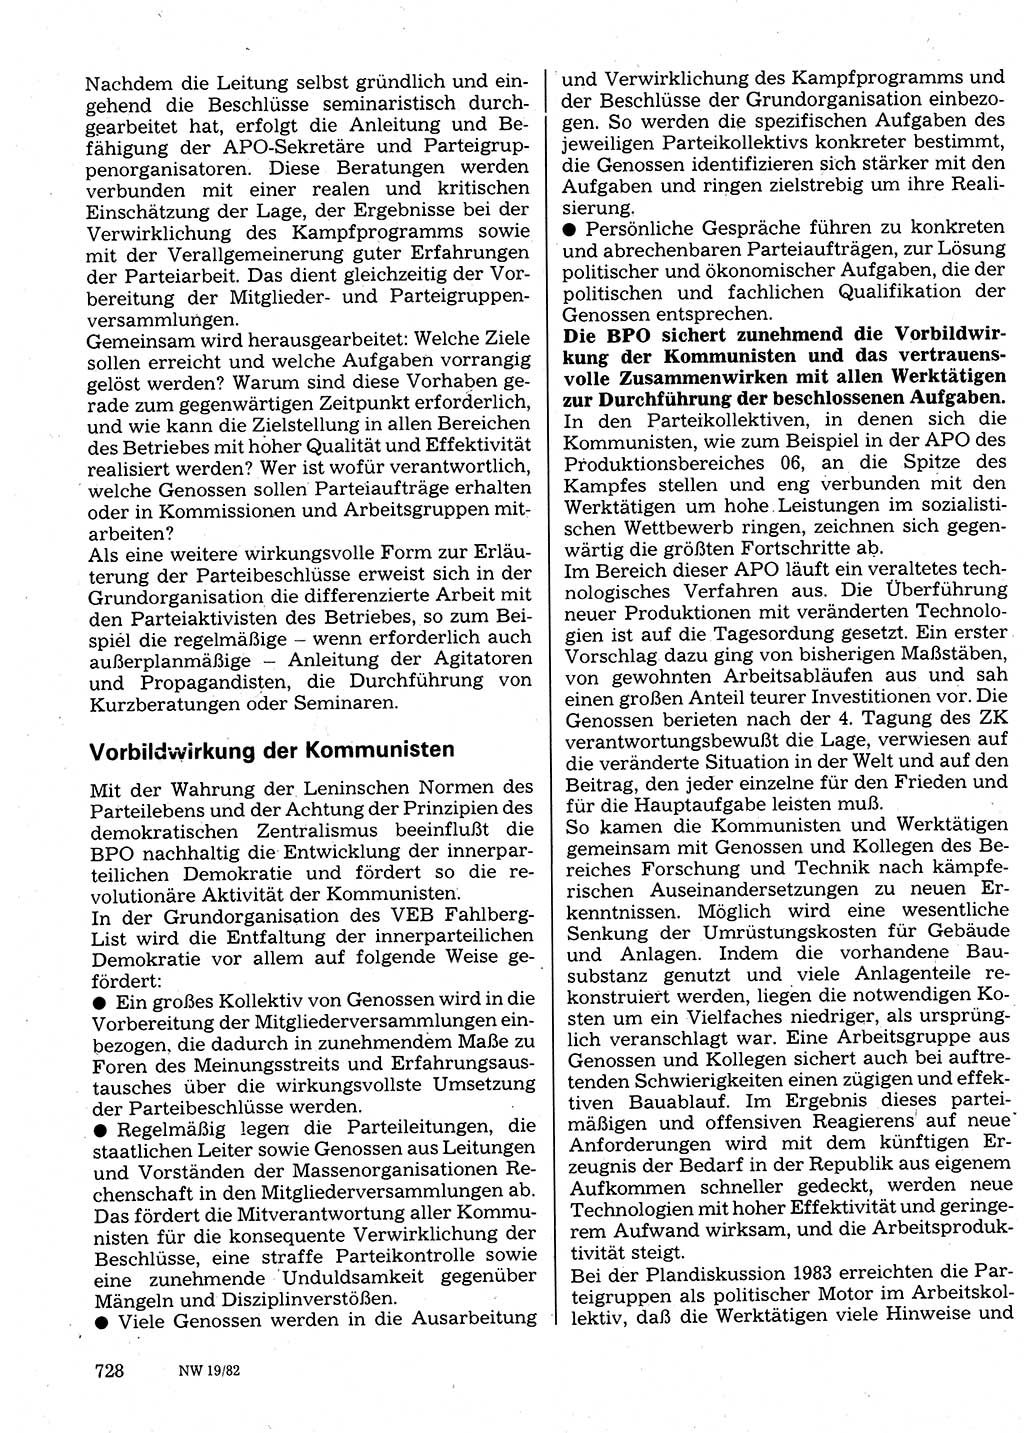 Neuer Weg (NW), Organ des Zentralkomitees (ZK) der SED (Sozialistische Einheitspartei Deutschlands) für Fragen des Parteilebens, 37. Jahrgang [Deutsche Demokratische Republik (DDR)] 1982, Seite 728 (NW ZK SED DDR 1982, S. 728)